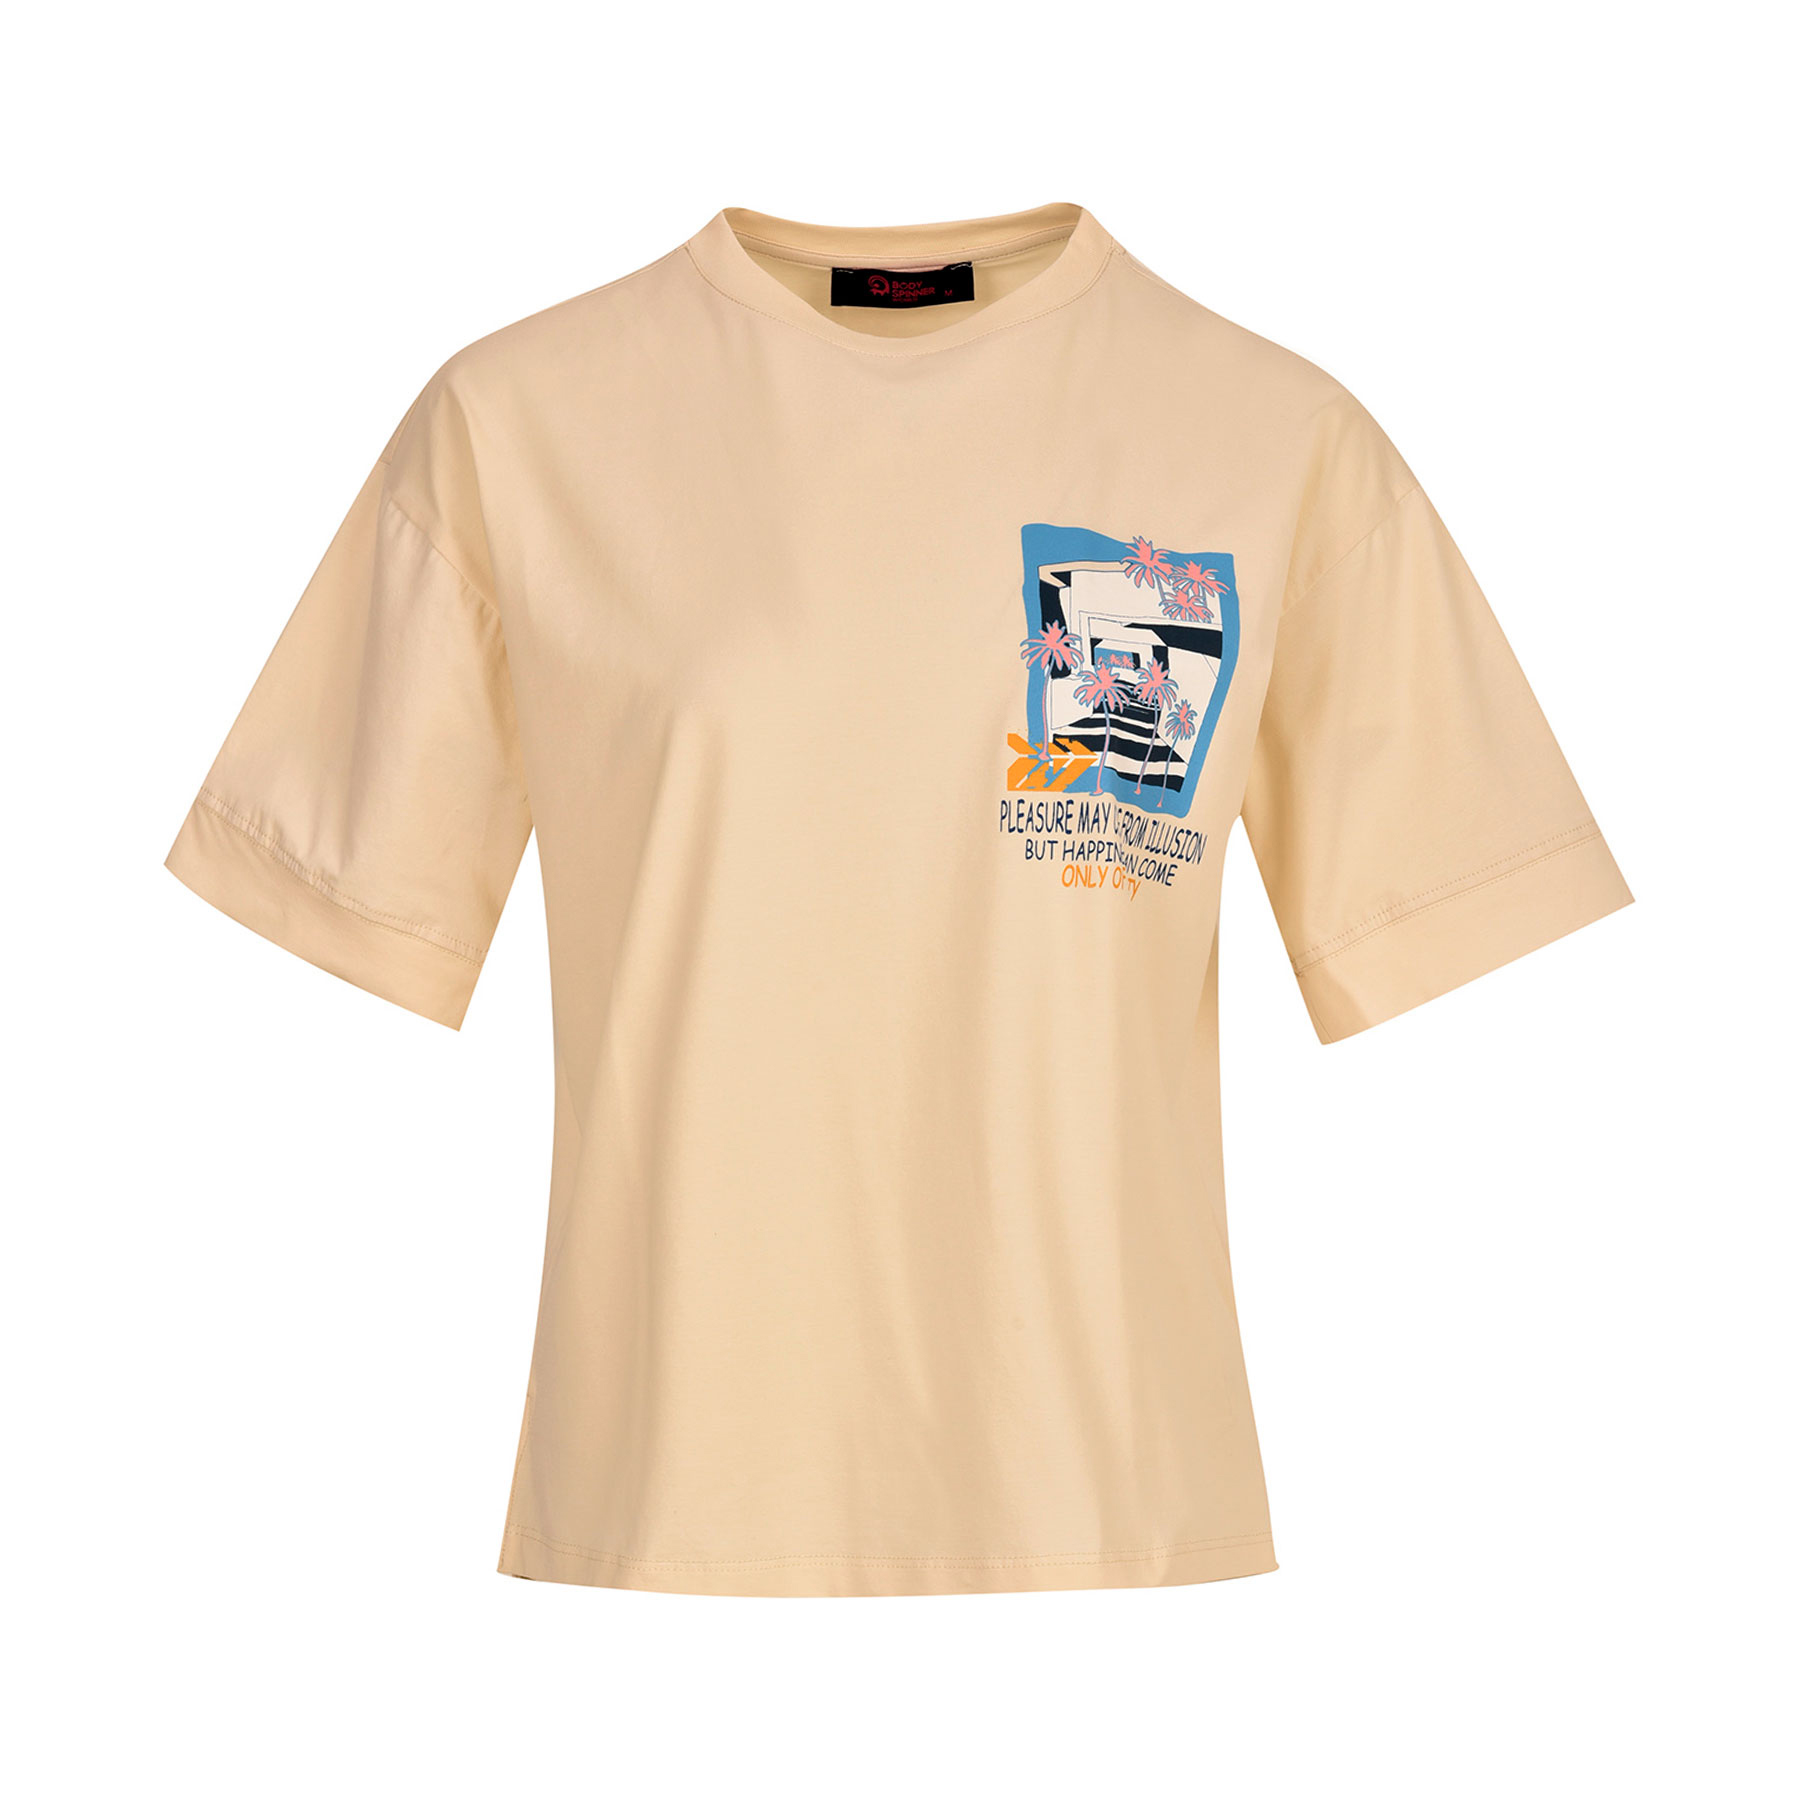 تی شرت آستین کوتاه زنانه بادی اسپینر مدل 3331 کد 1 رنگ کرم -  - 1